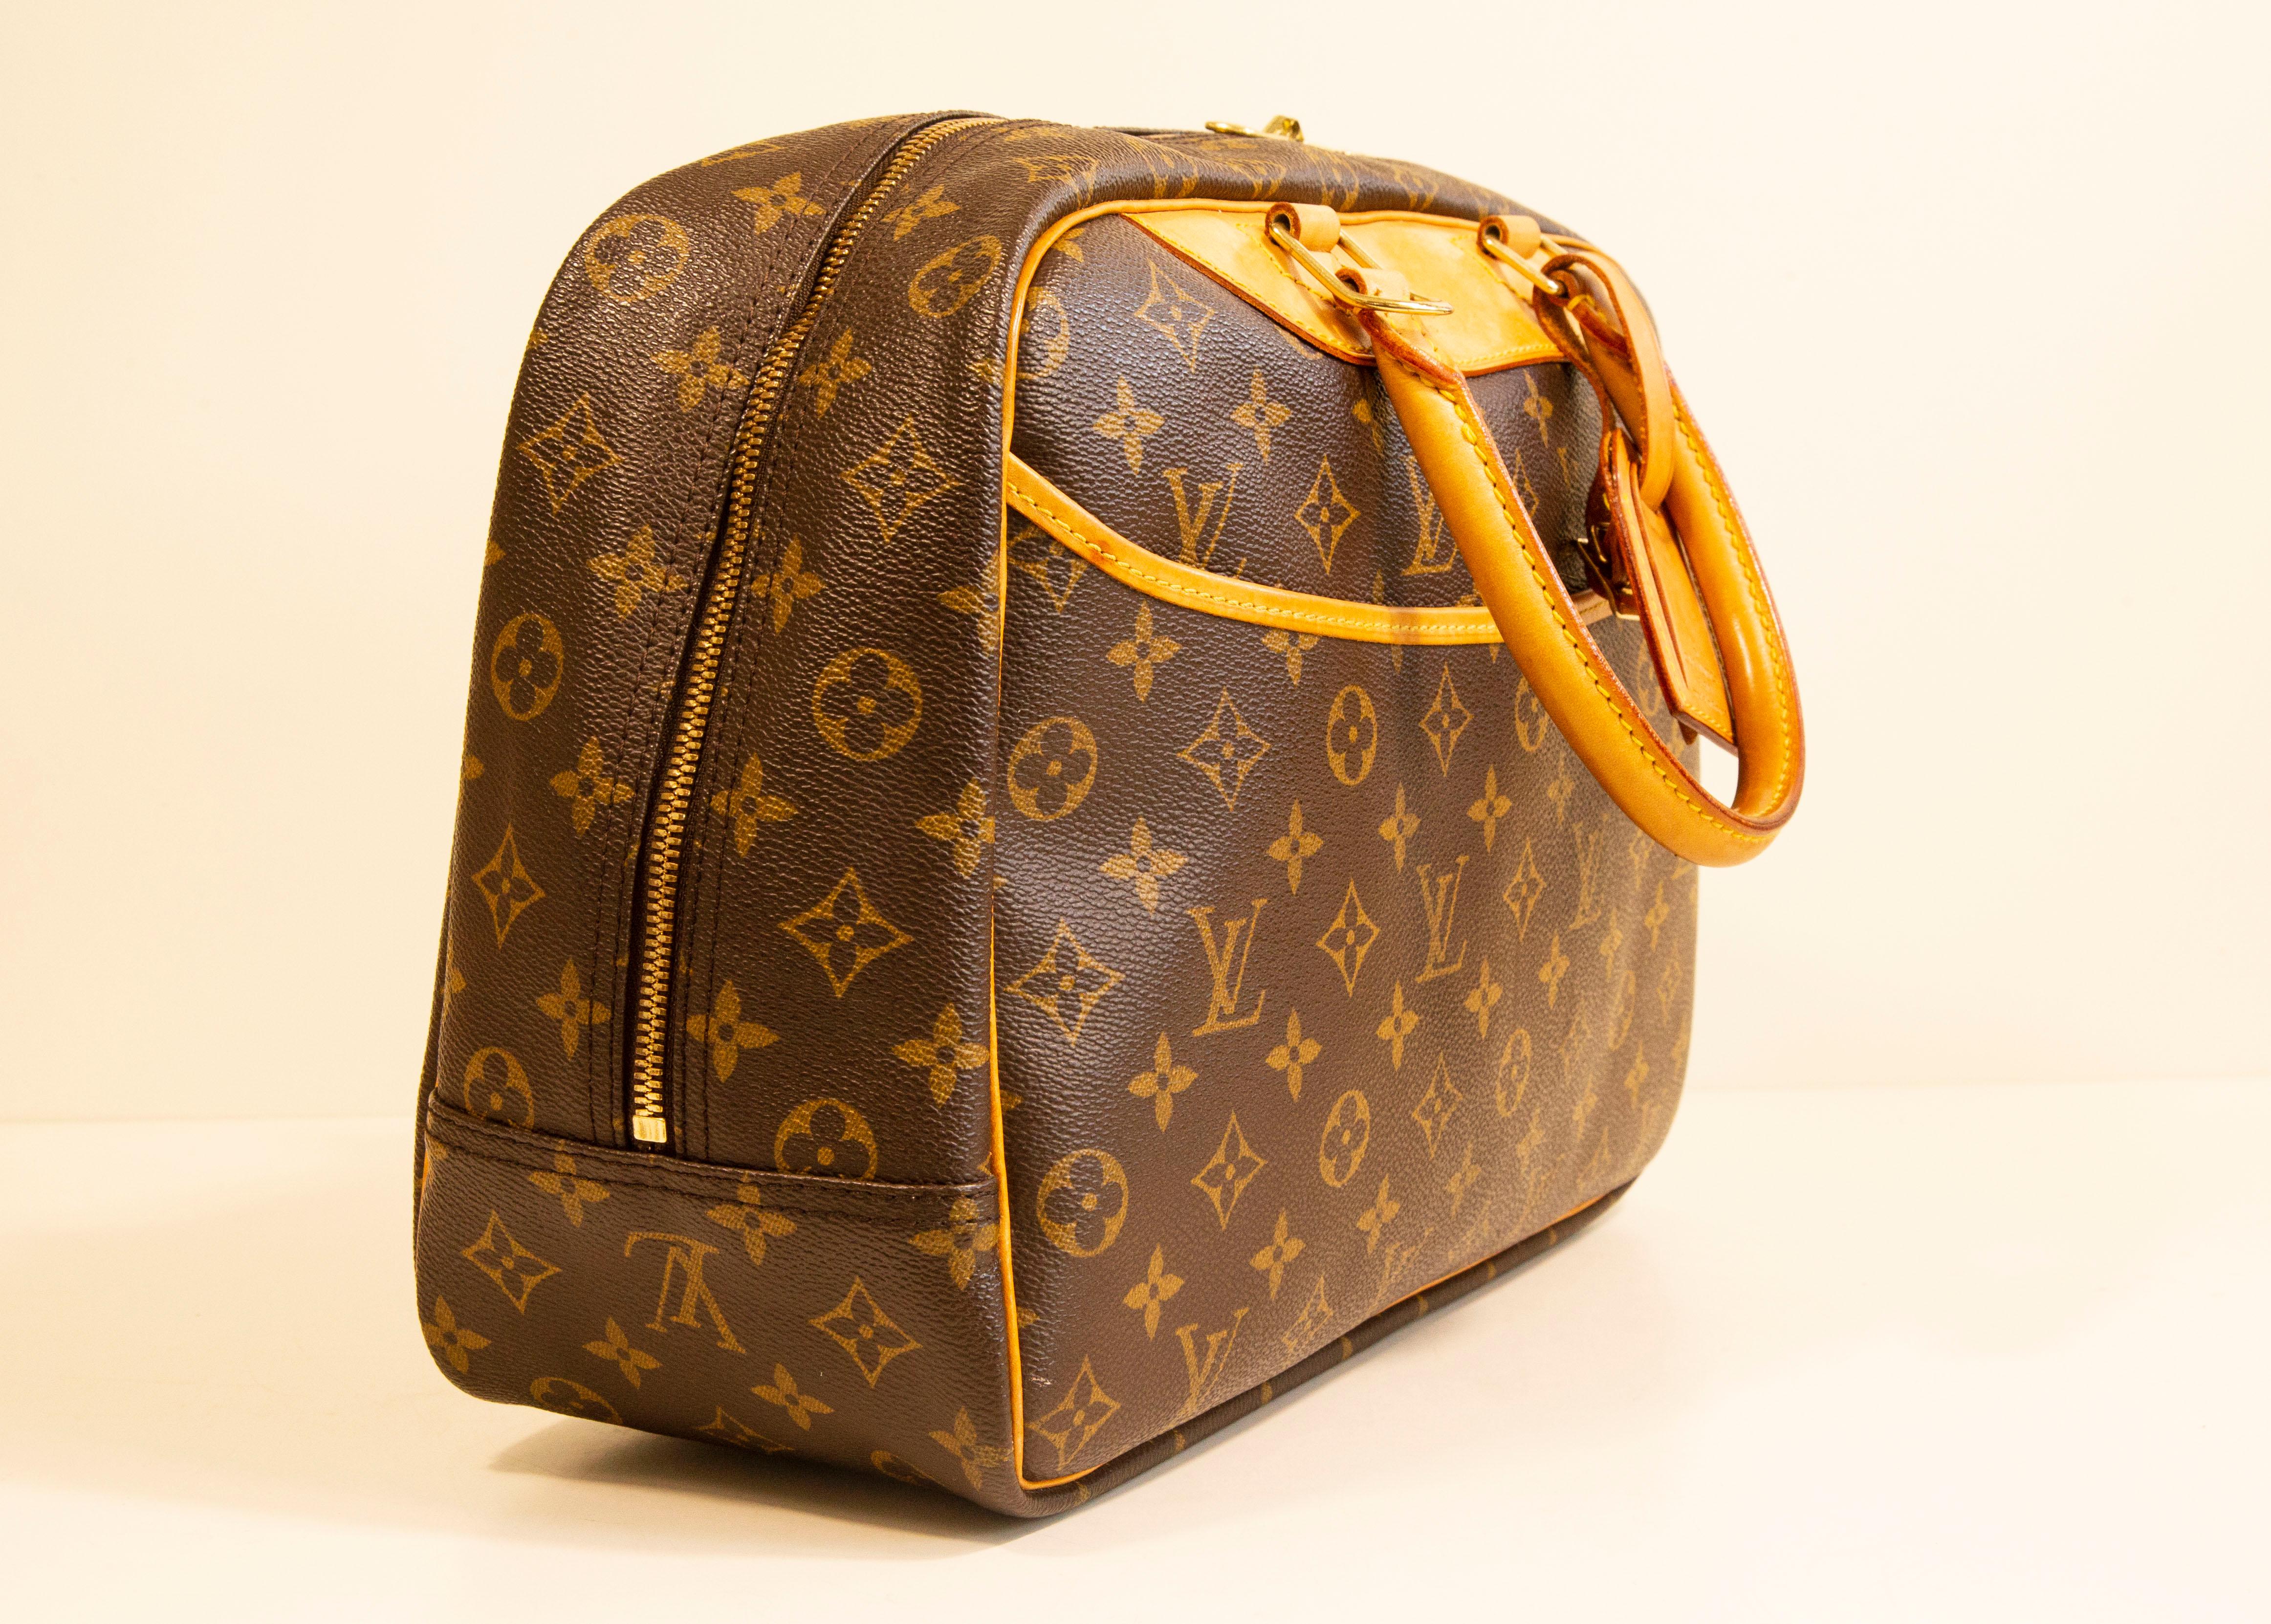 Un sac à main vintage Deauville de Louis Vuitton. Le sac est fabriqué en toile enduite de vinyle monogramme marron avec des garnitures en cuir Vachetta beige/marron clair et des ferrures en laiton. L'intérieur est doublé de tissu synthétique beige